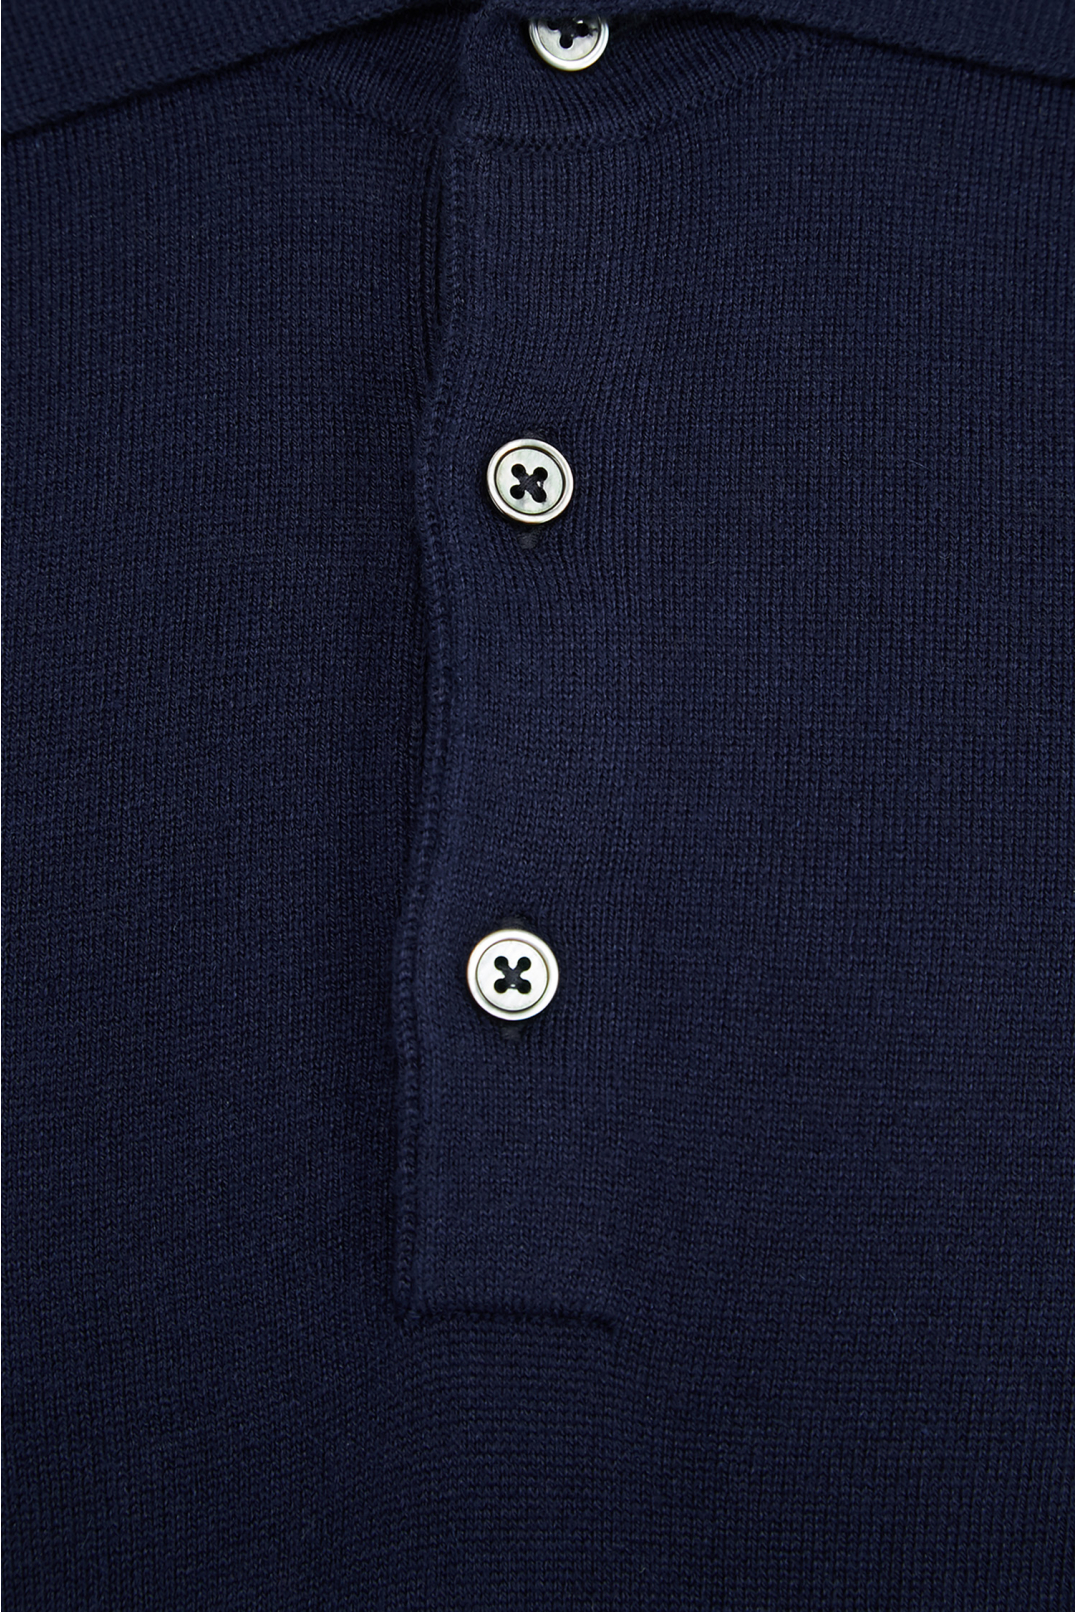 Чоловічий темно-синій шовковий джемпер з коротким рукавом - 3